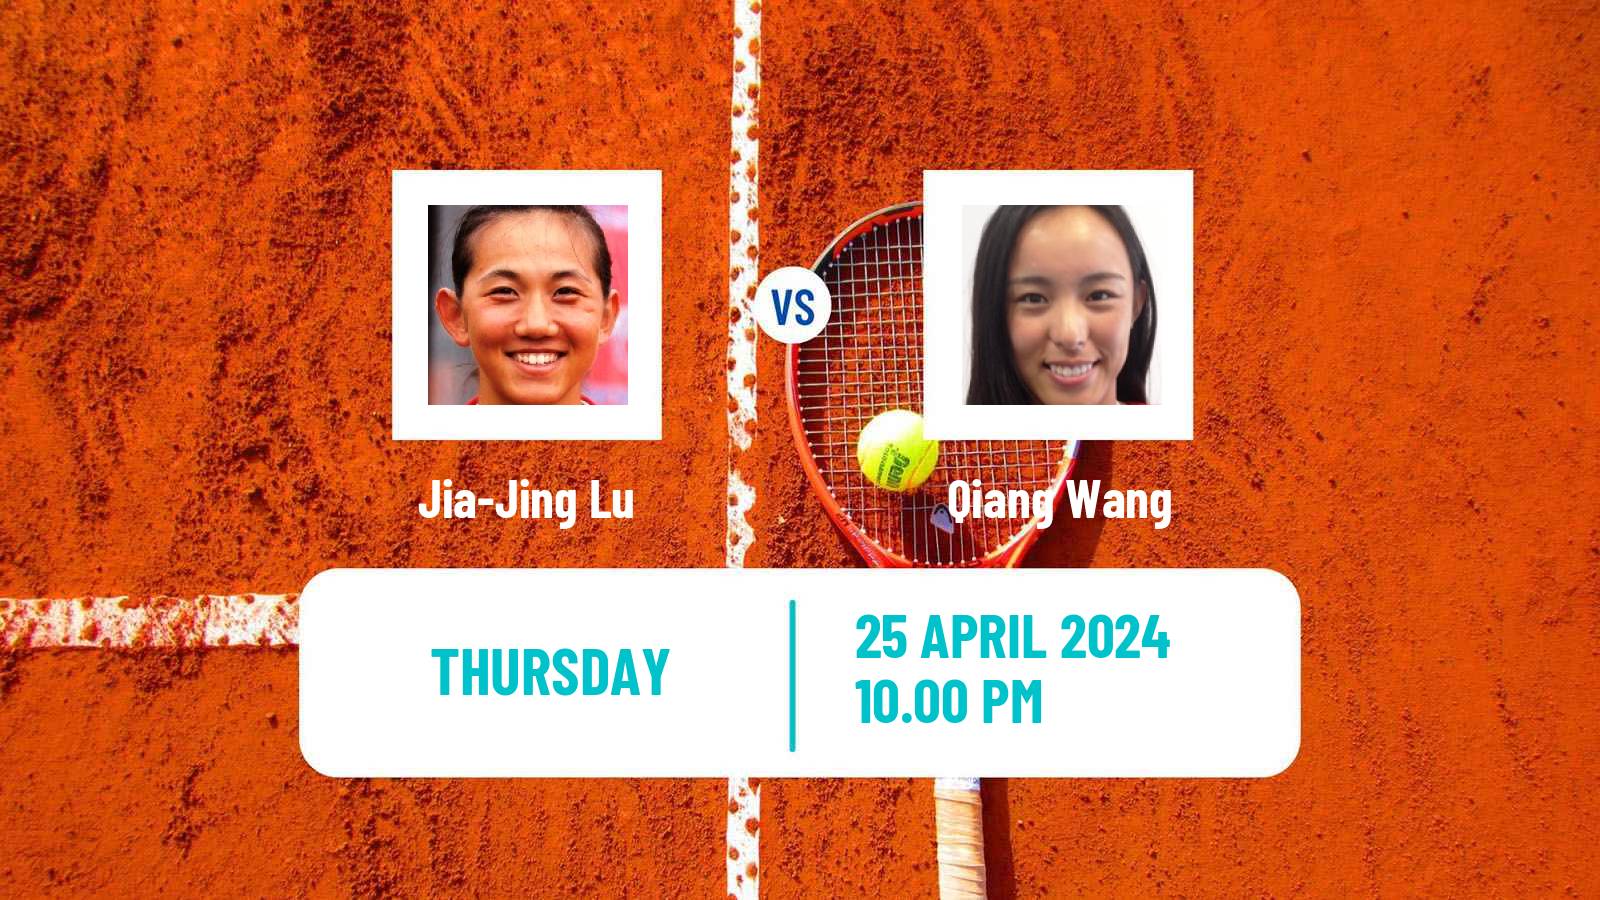 Tennis ITF W50 Wuning Women Jia-Jing Lu - Qiang Wang